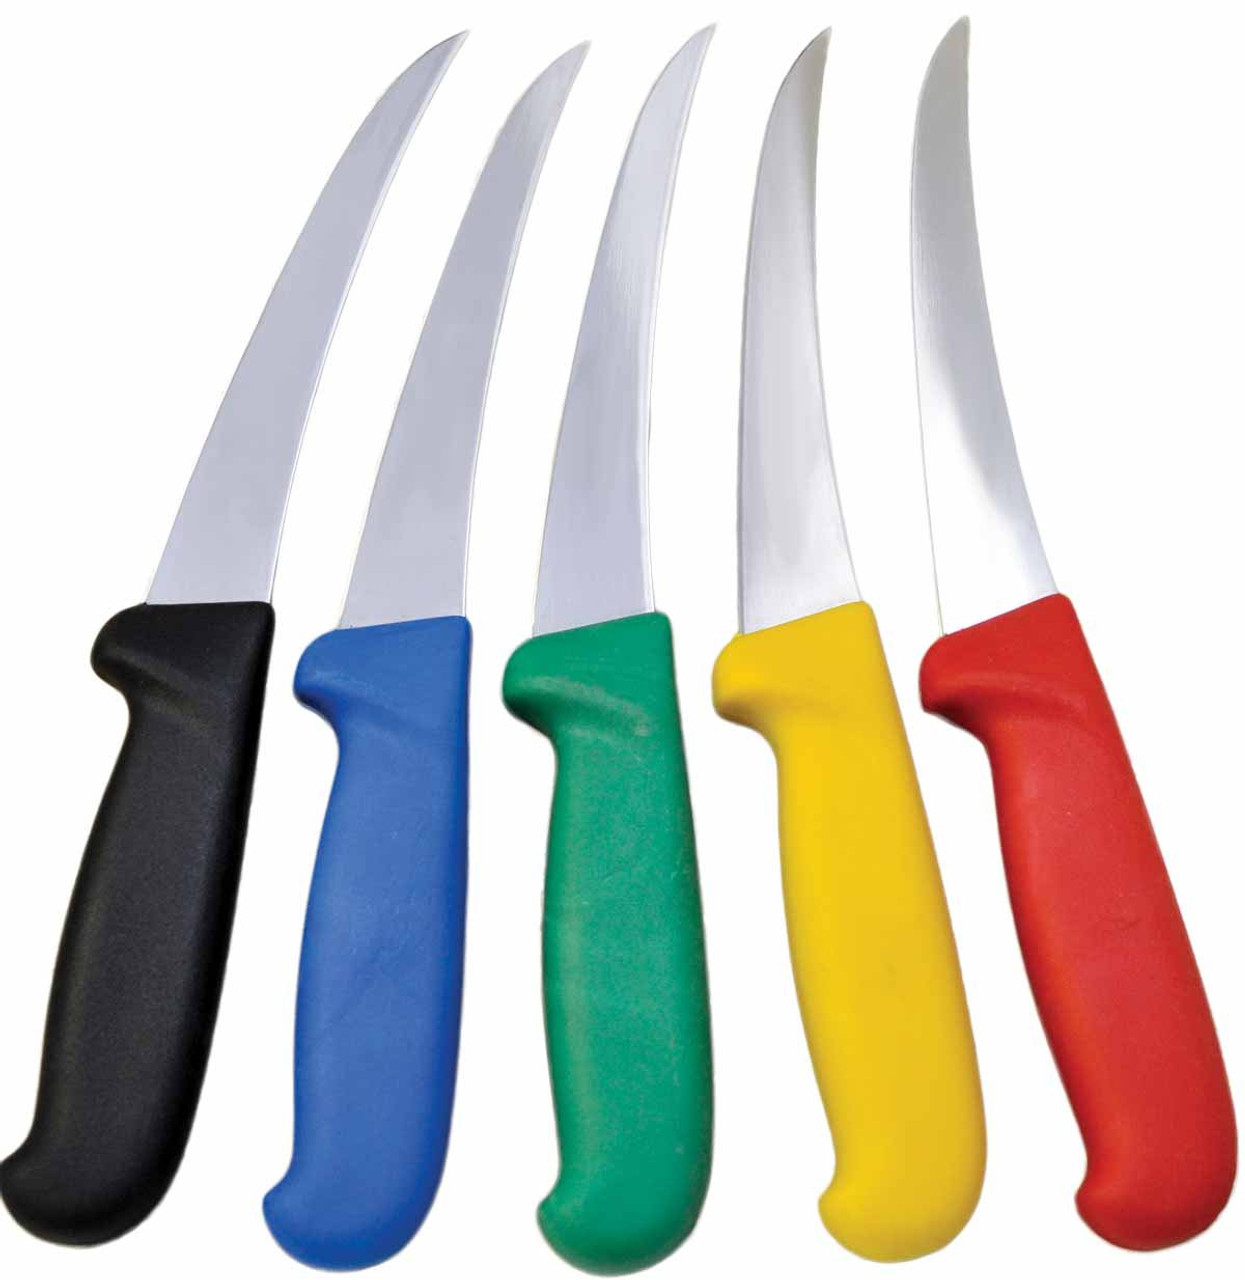 Curved Standard Cozzini Boning Knives (6) - Walton's